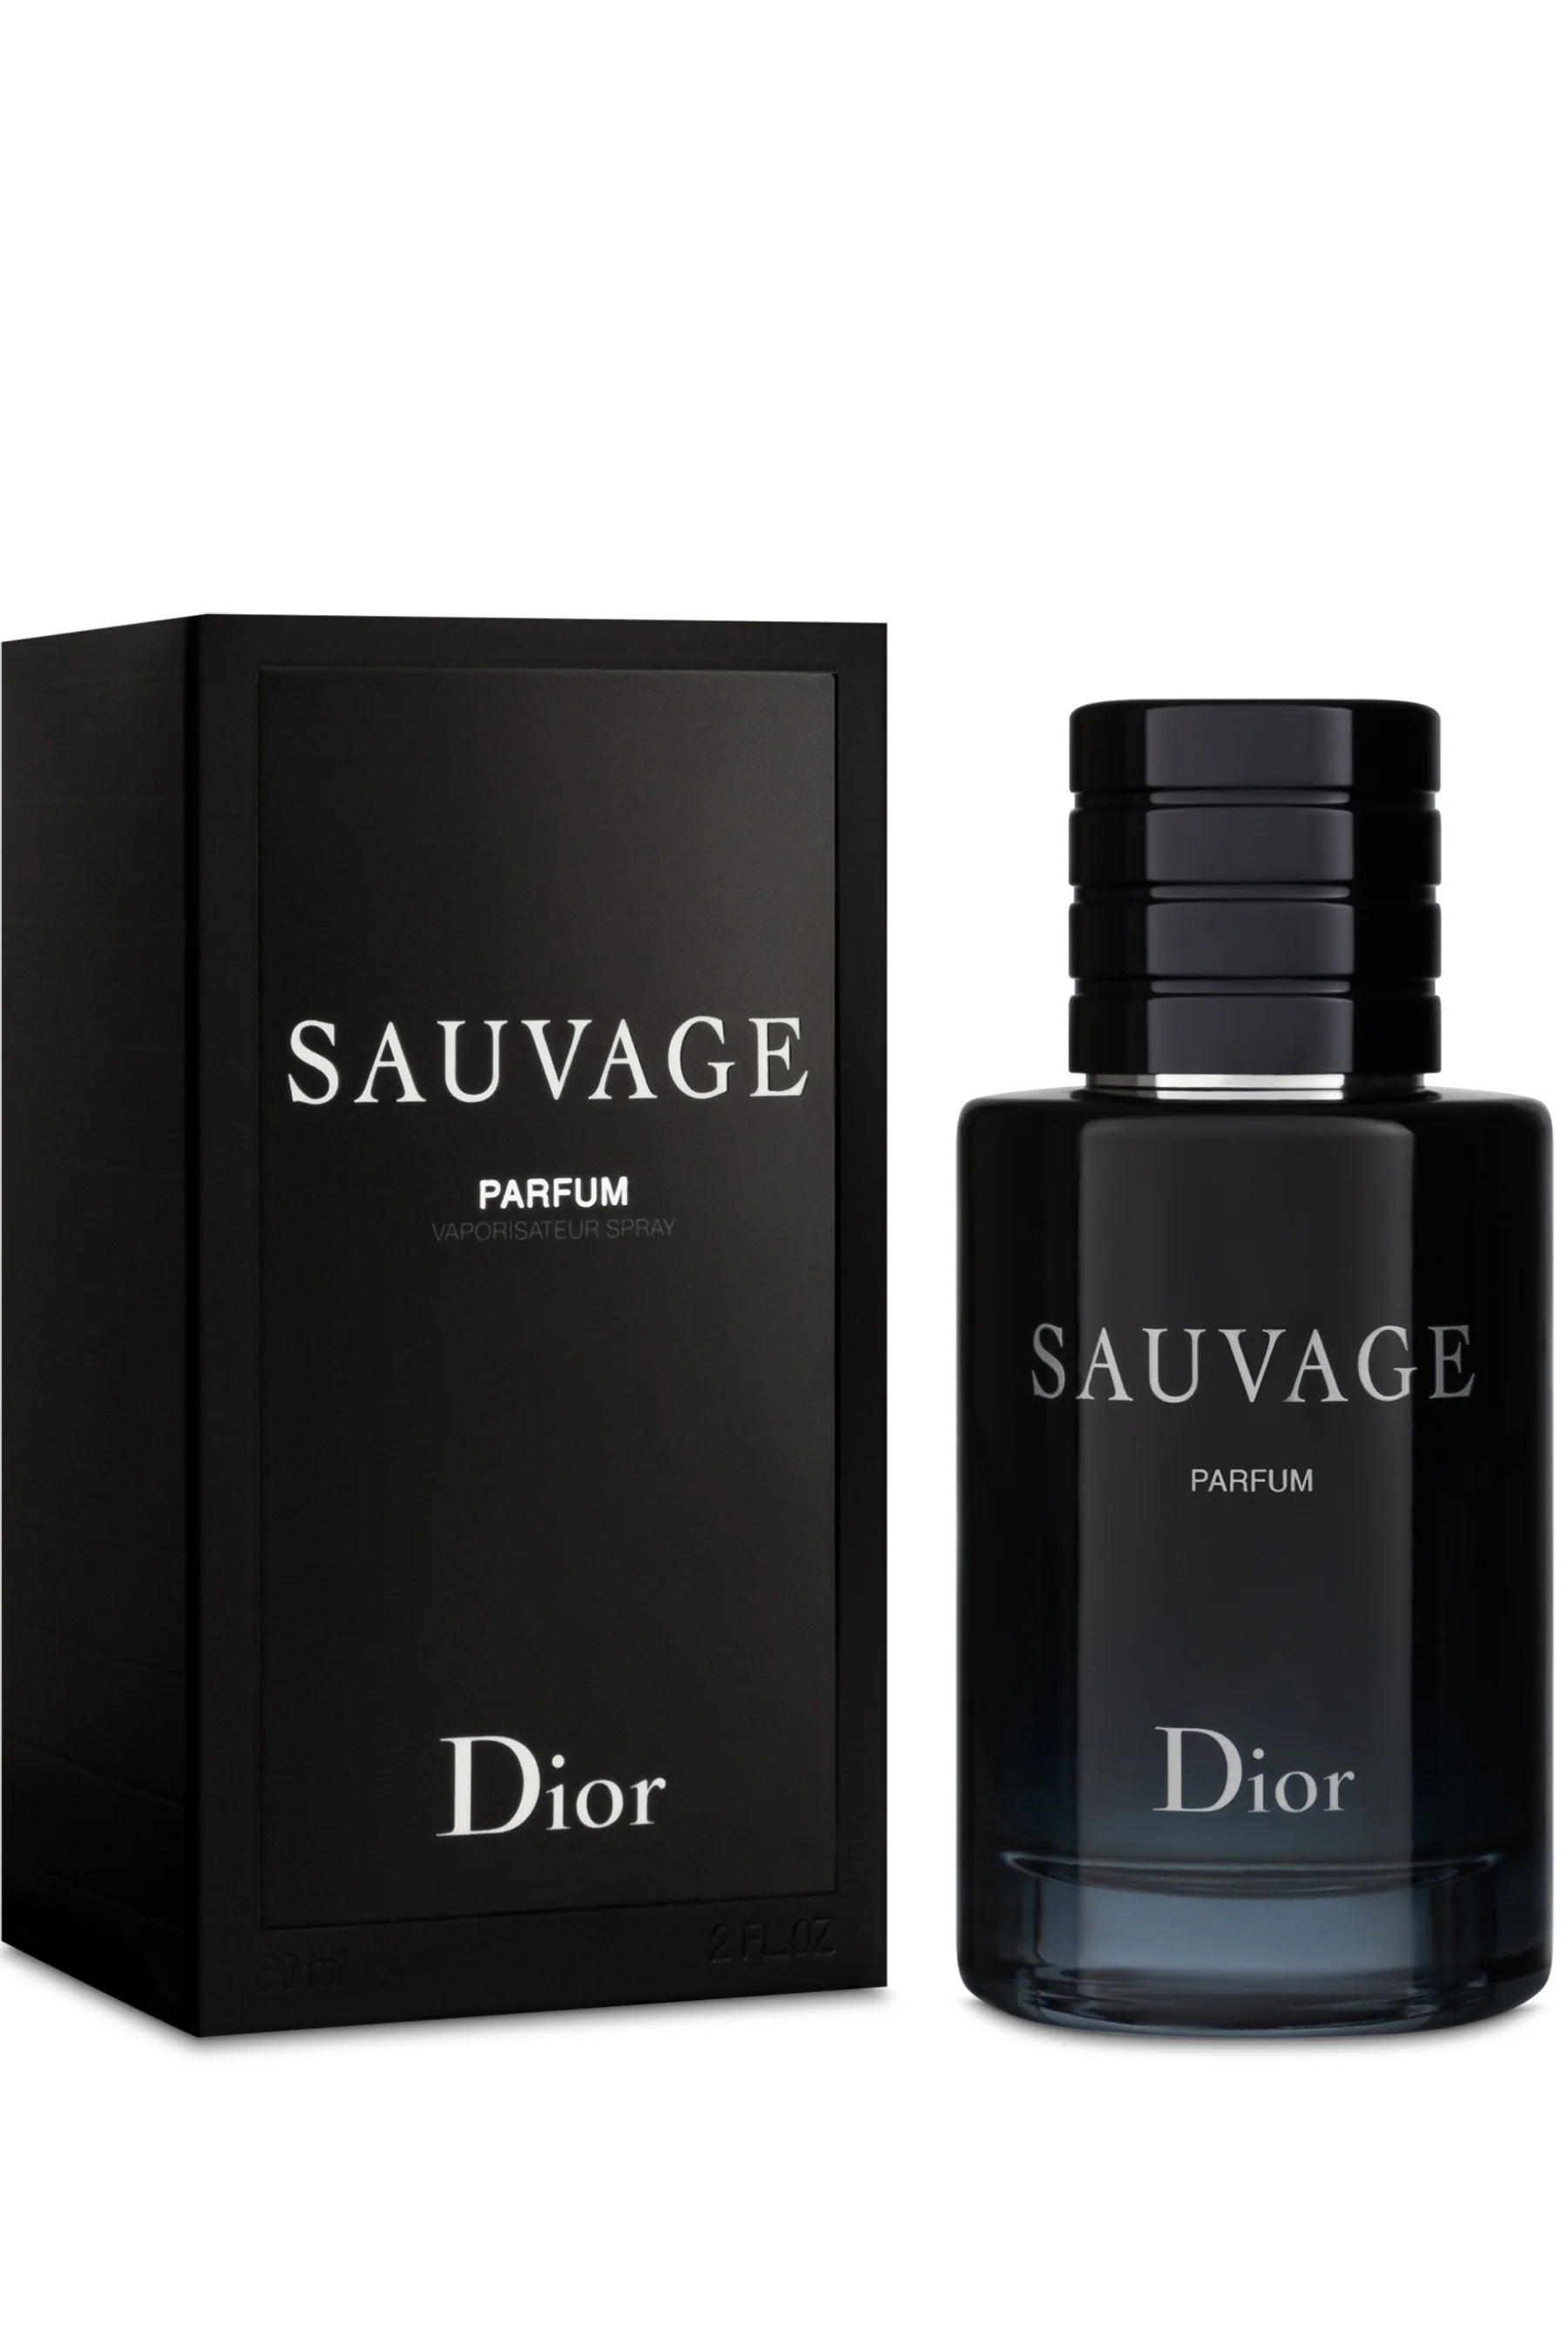 Sauvage perfum